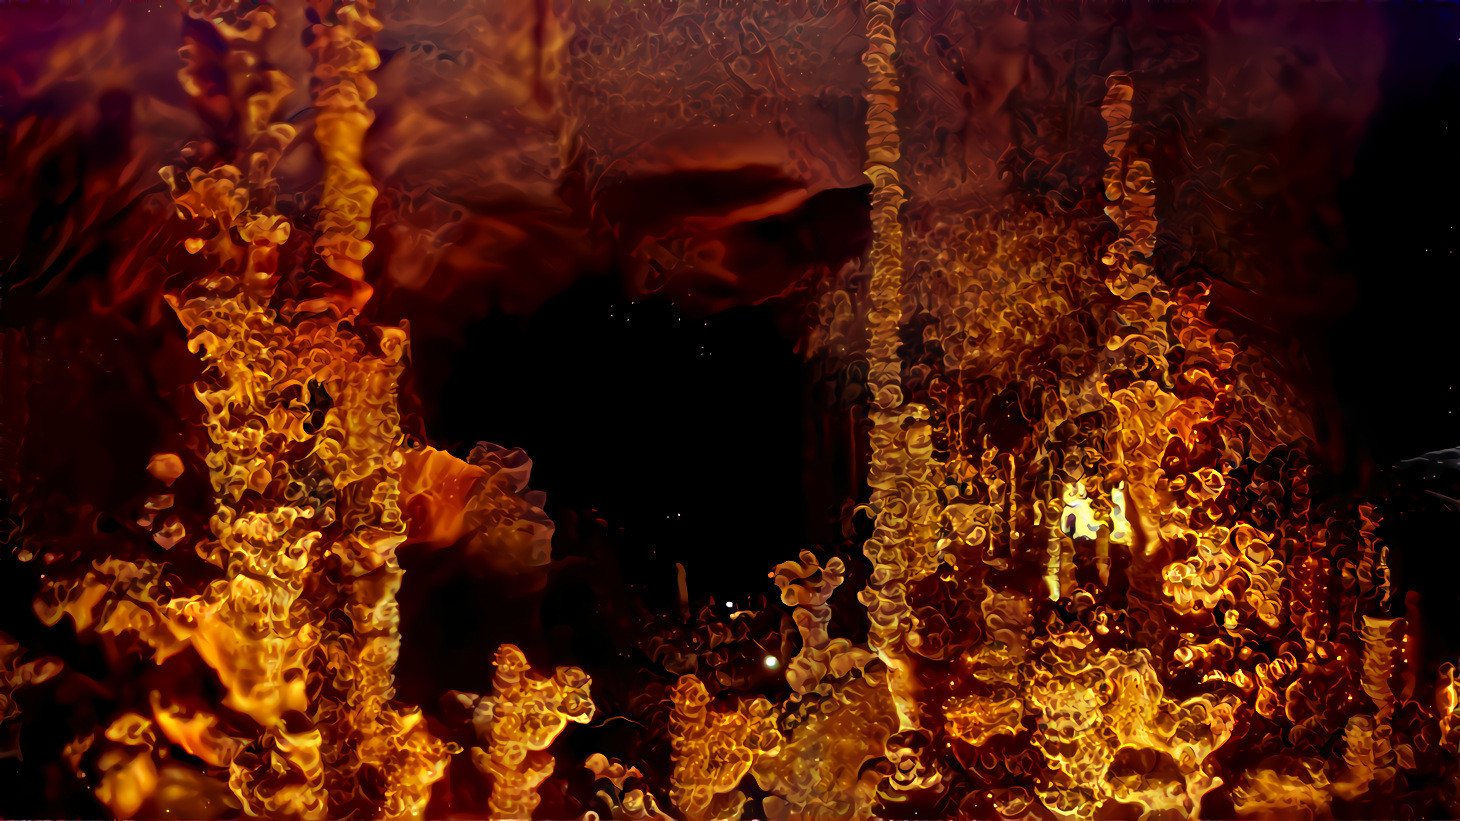 stalagmites on fire